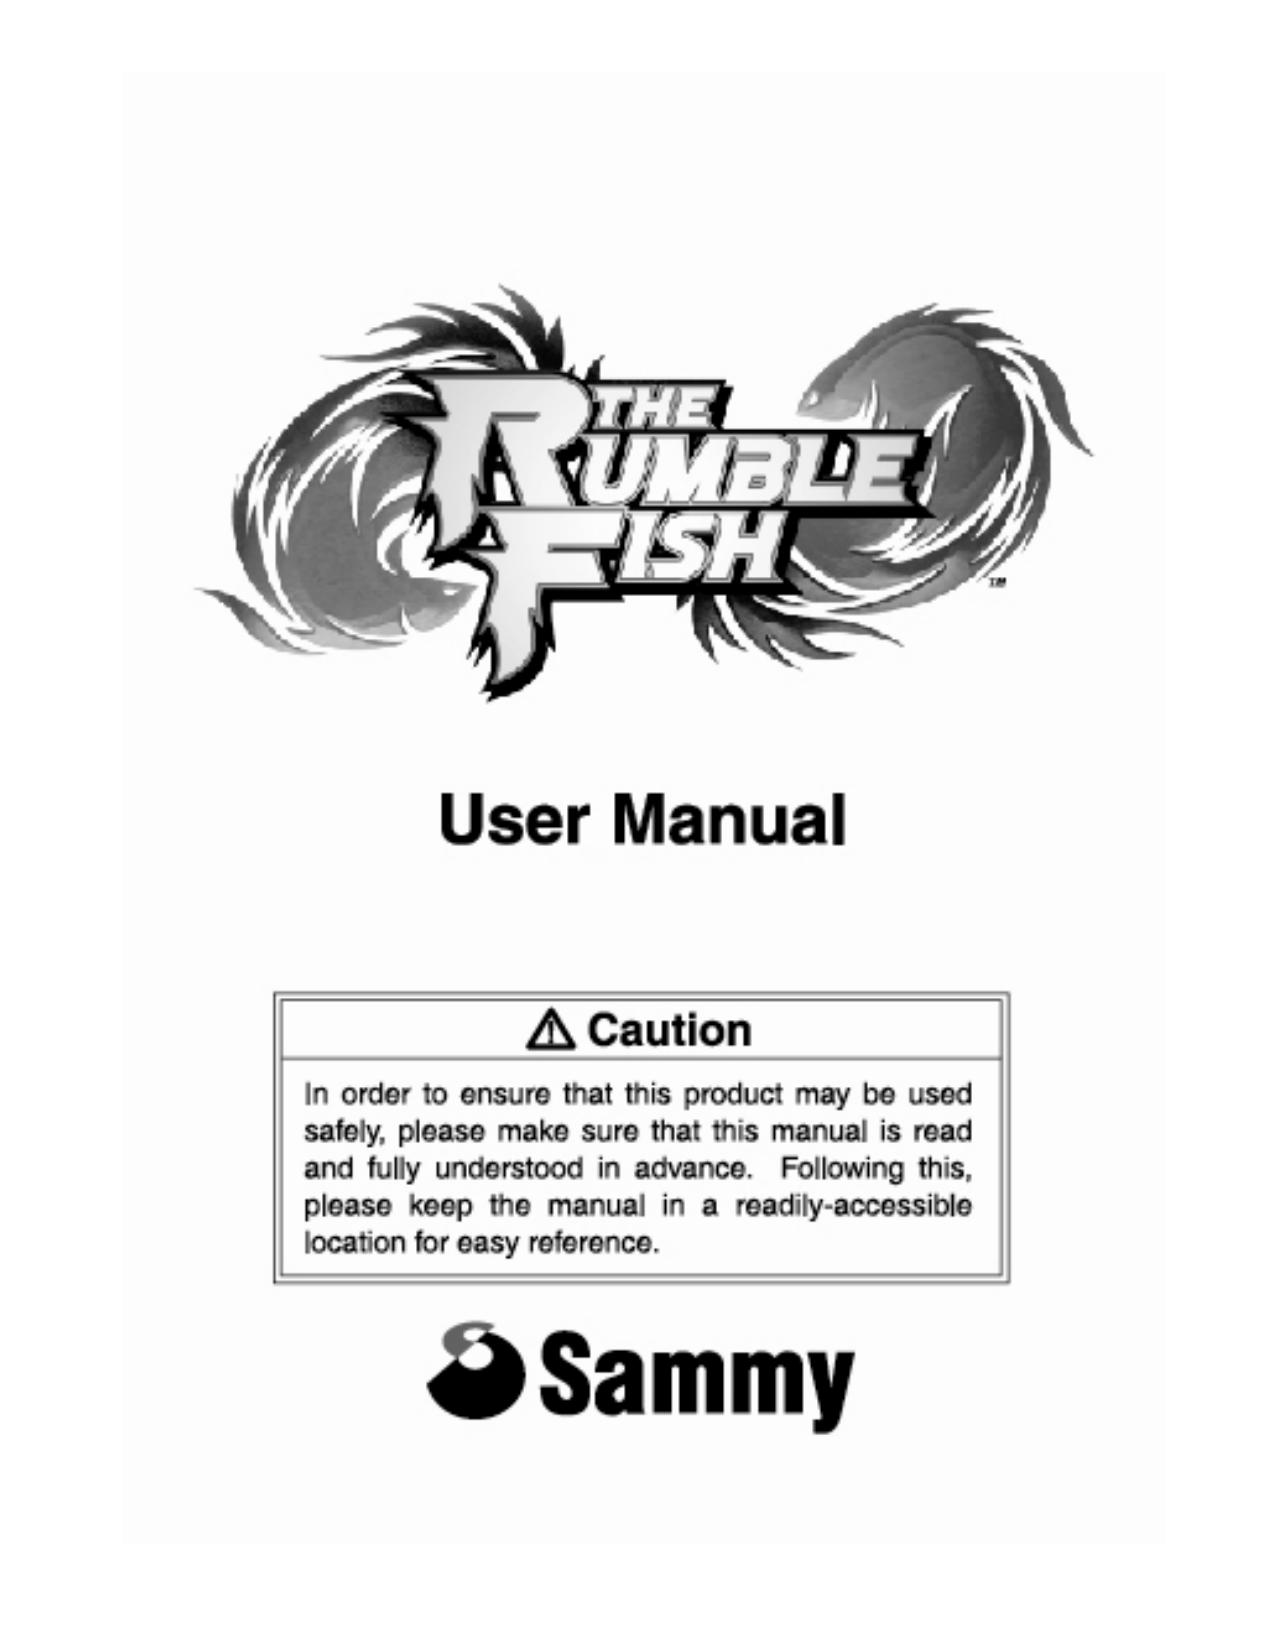 102104 rumblefish manual